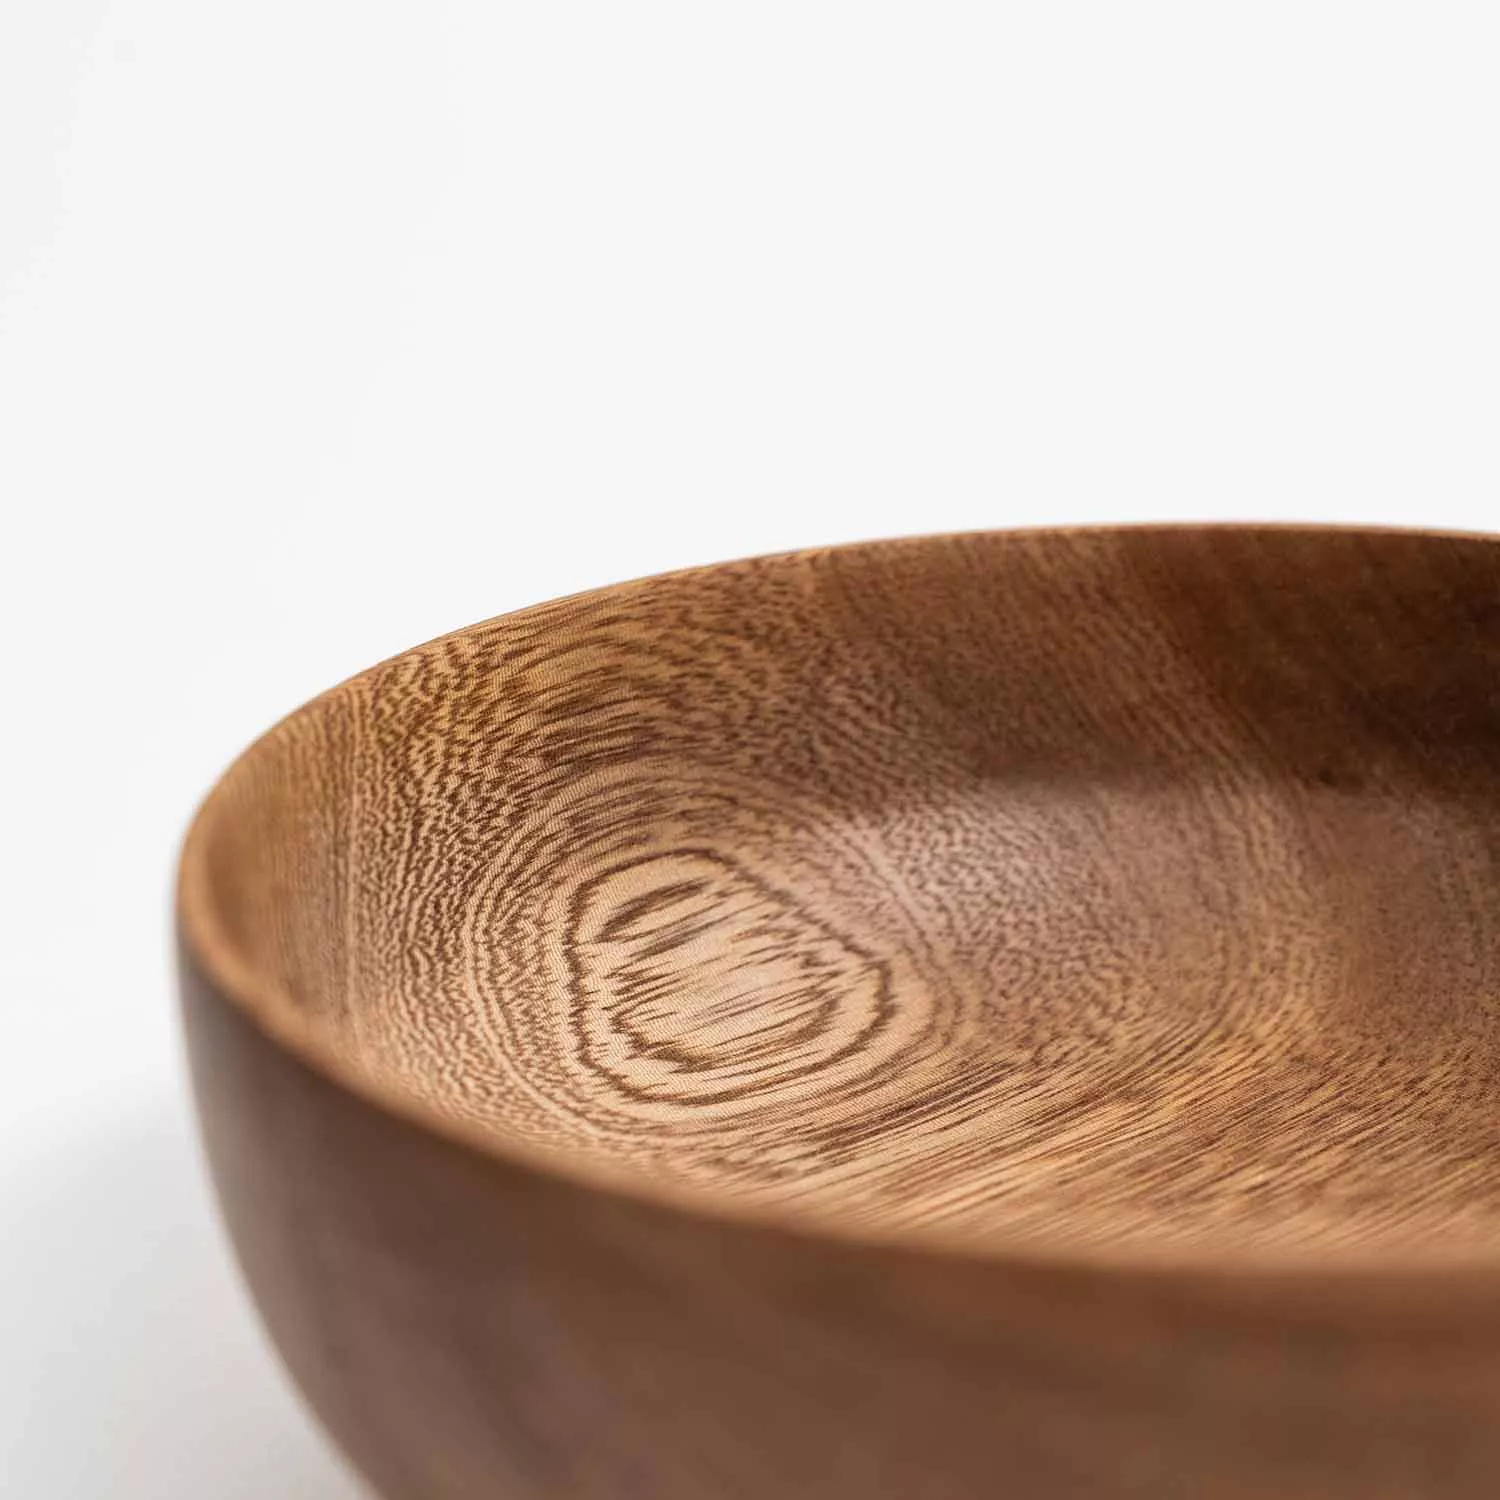 Chechen Wood Design Cuenco Bowl, 6"